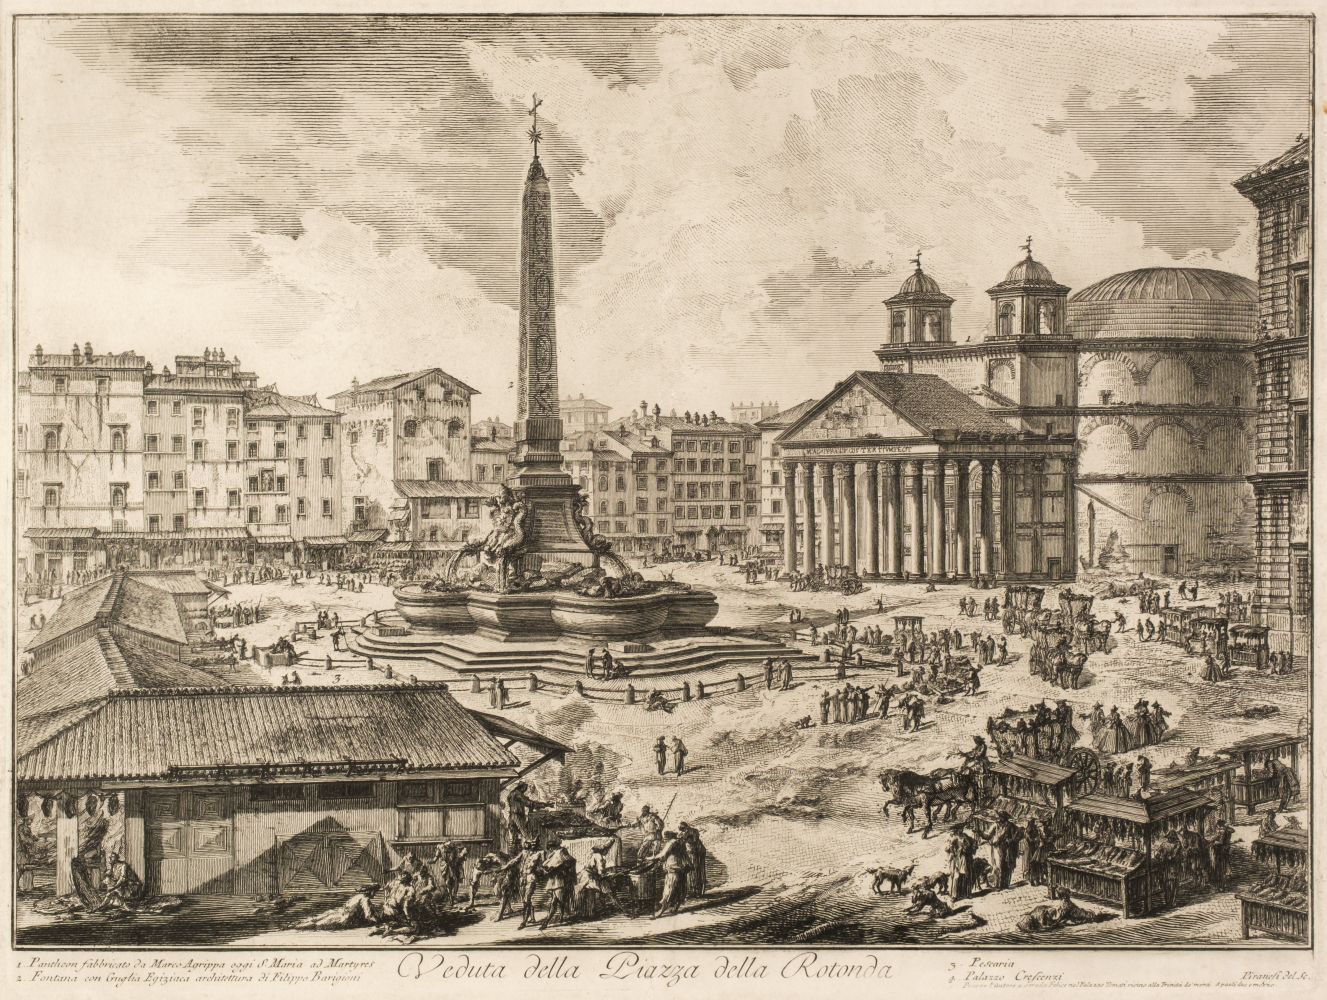 Piranesi (Giovanni Battista, 1720-78). Veduta della Piazza della Rotonda, 1751